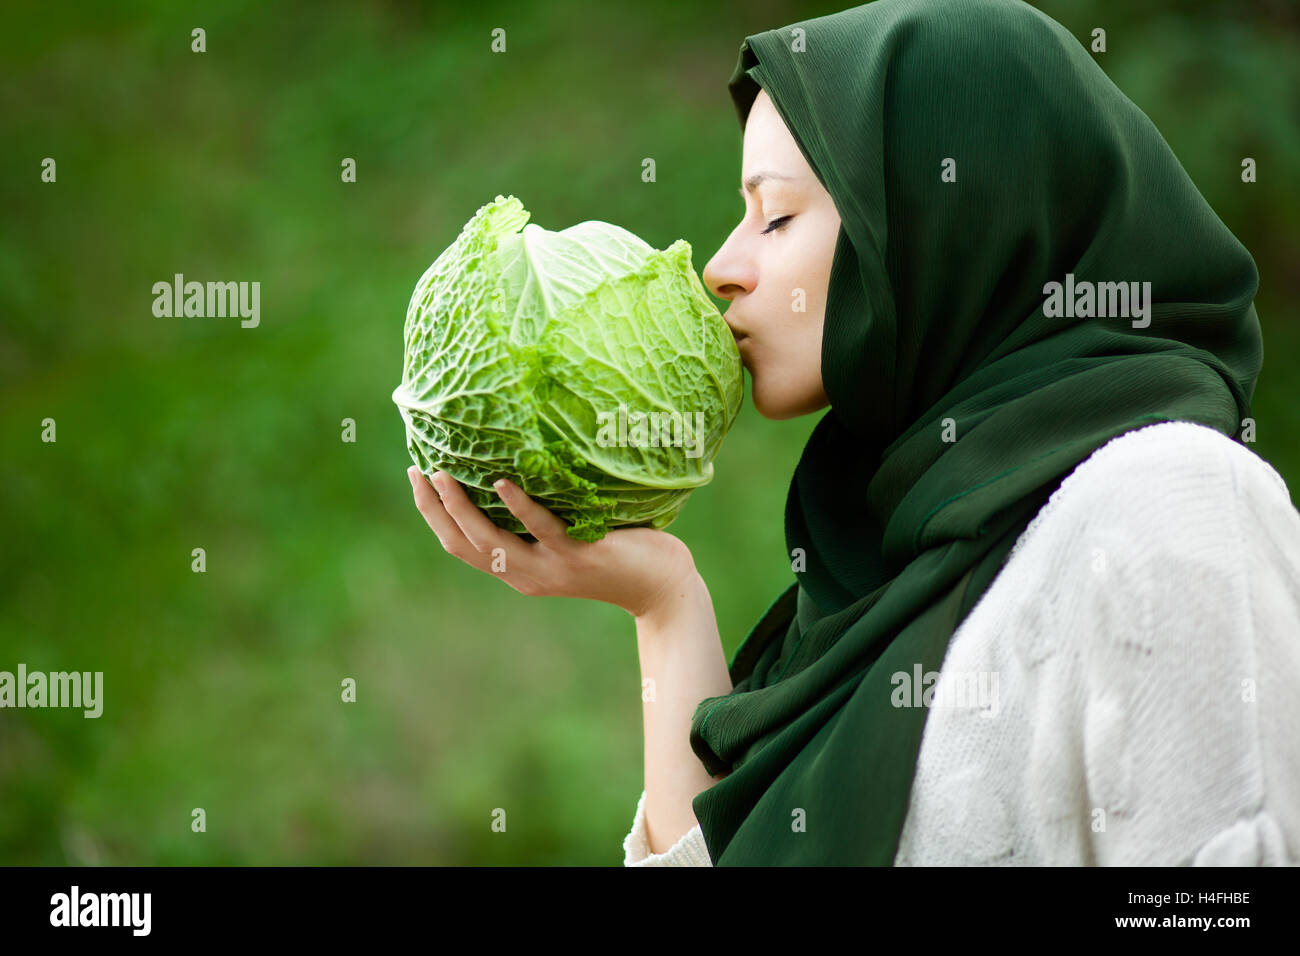 Vegano musulmano donna con velo baciando un cavolo verza Foto Stock